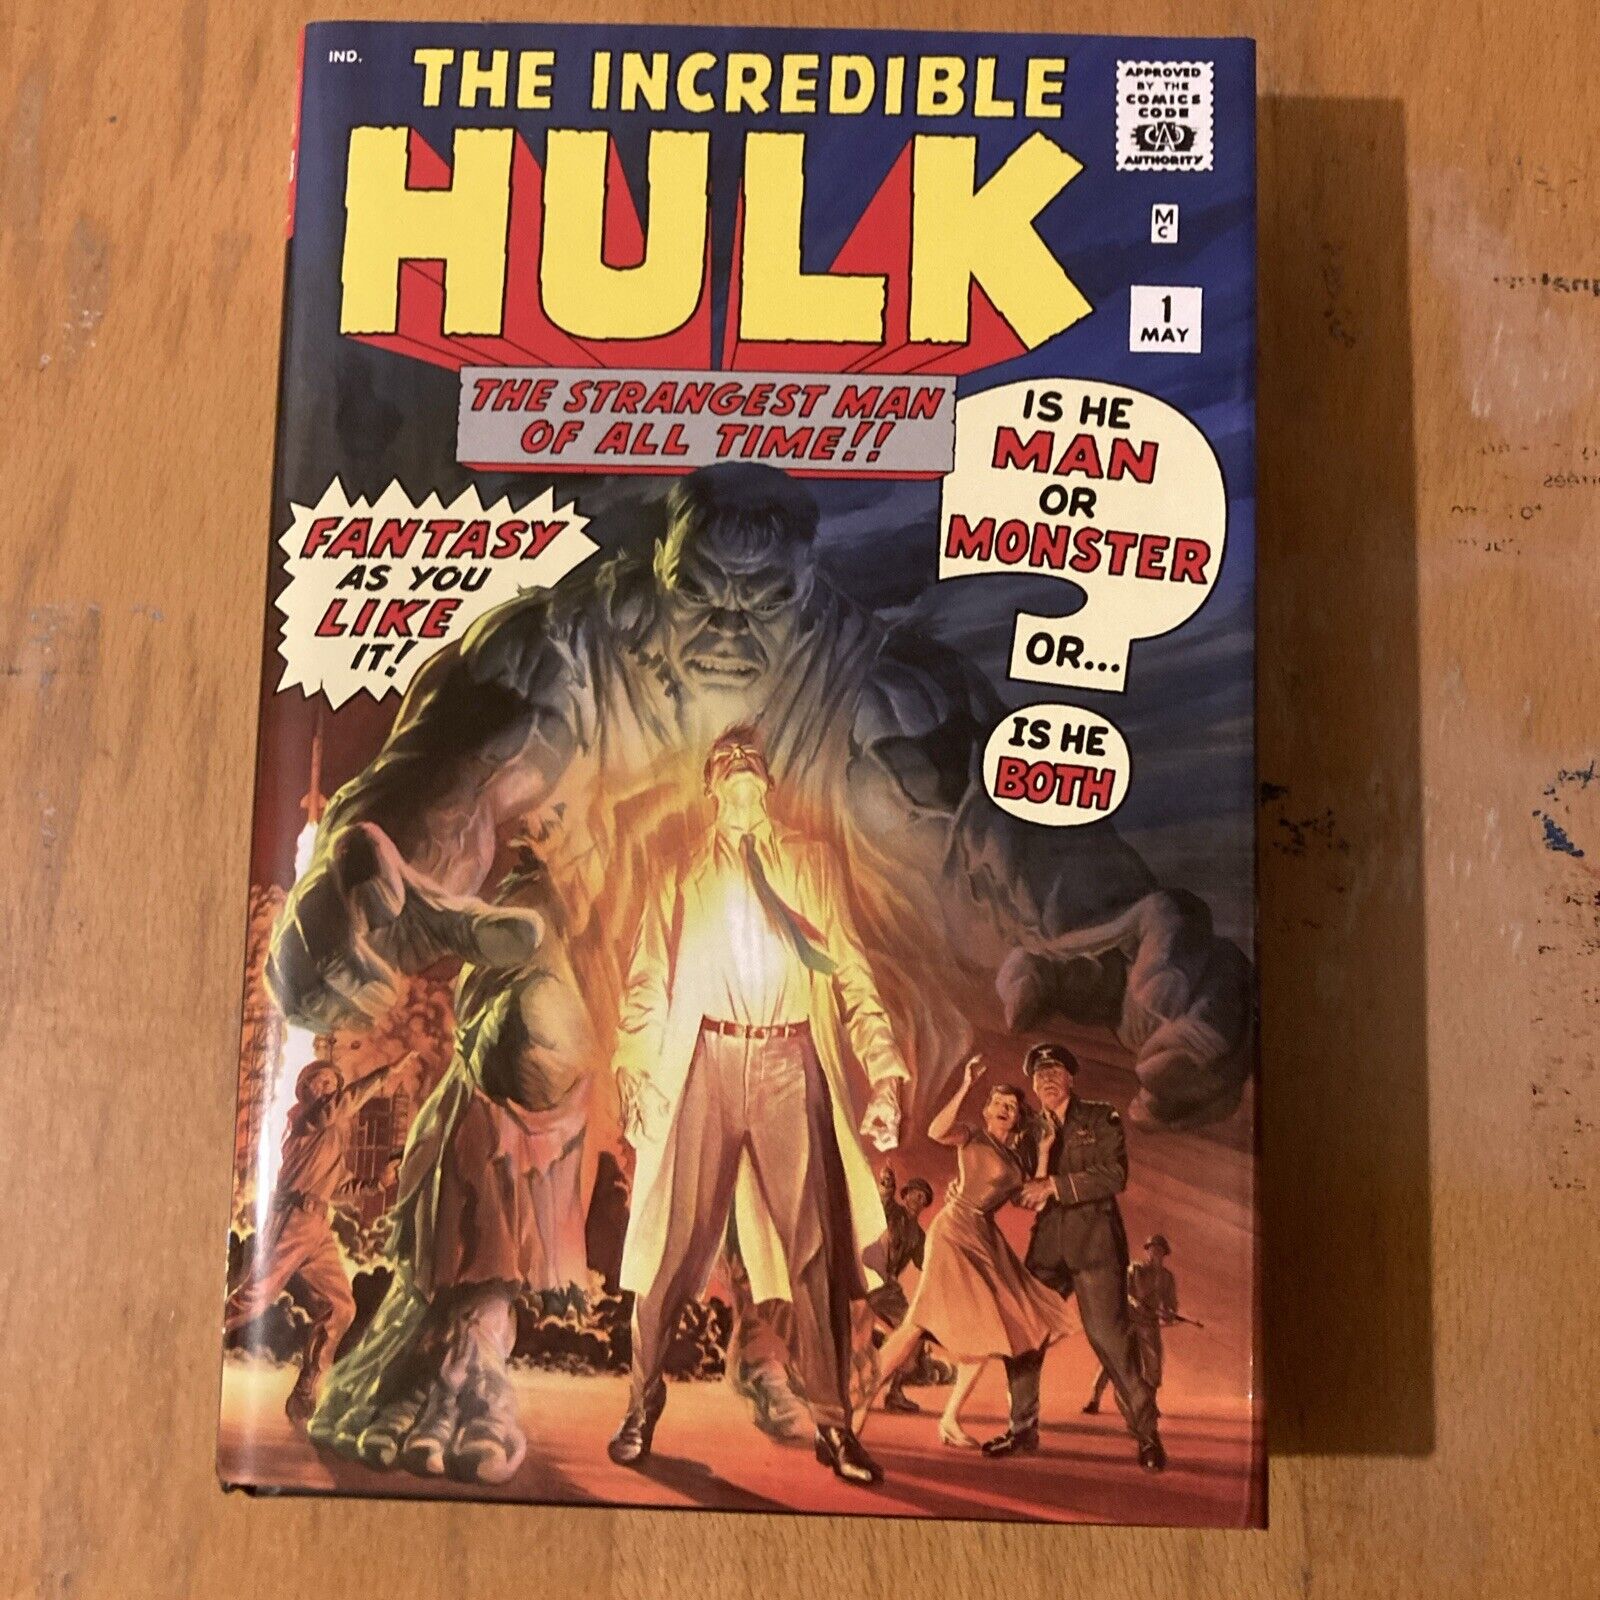 The Incredible Hulk Omnibus #1 (Marvel Comics 2021)